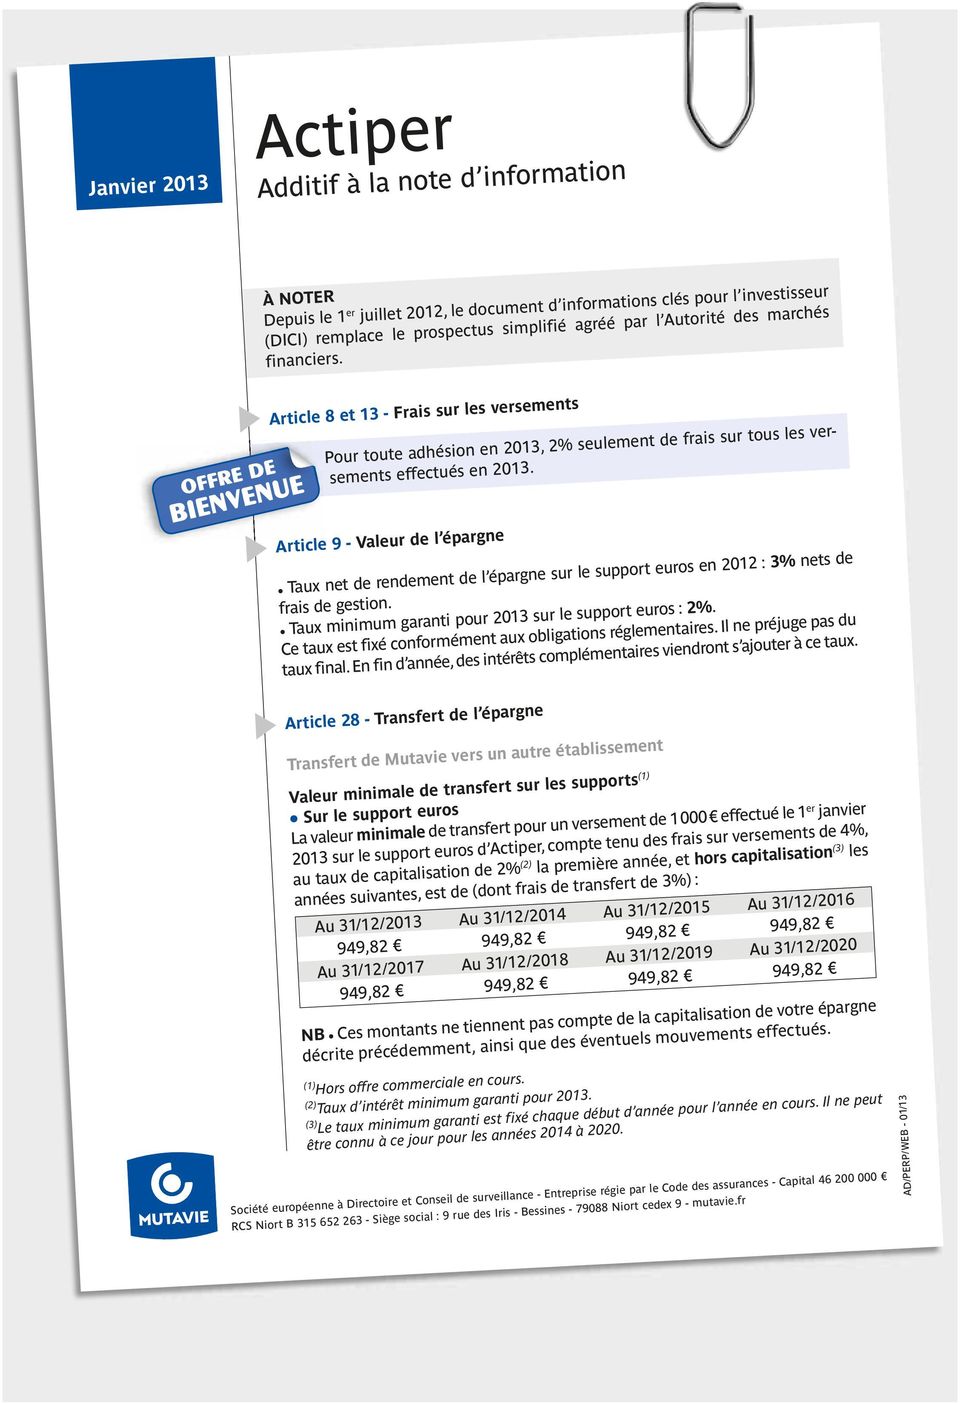 Article 9 - Valeur de l épargne Taux net de rendement de l épargne sur le support euros en 2012 : 3% nets de frais de gestion. Taux minimum garanti pour 2013 sur le support euros : 2%.